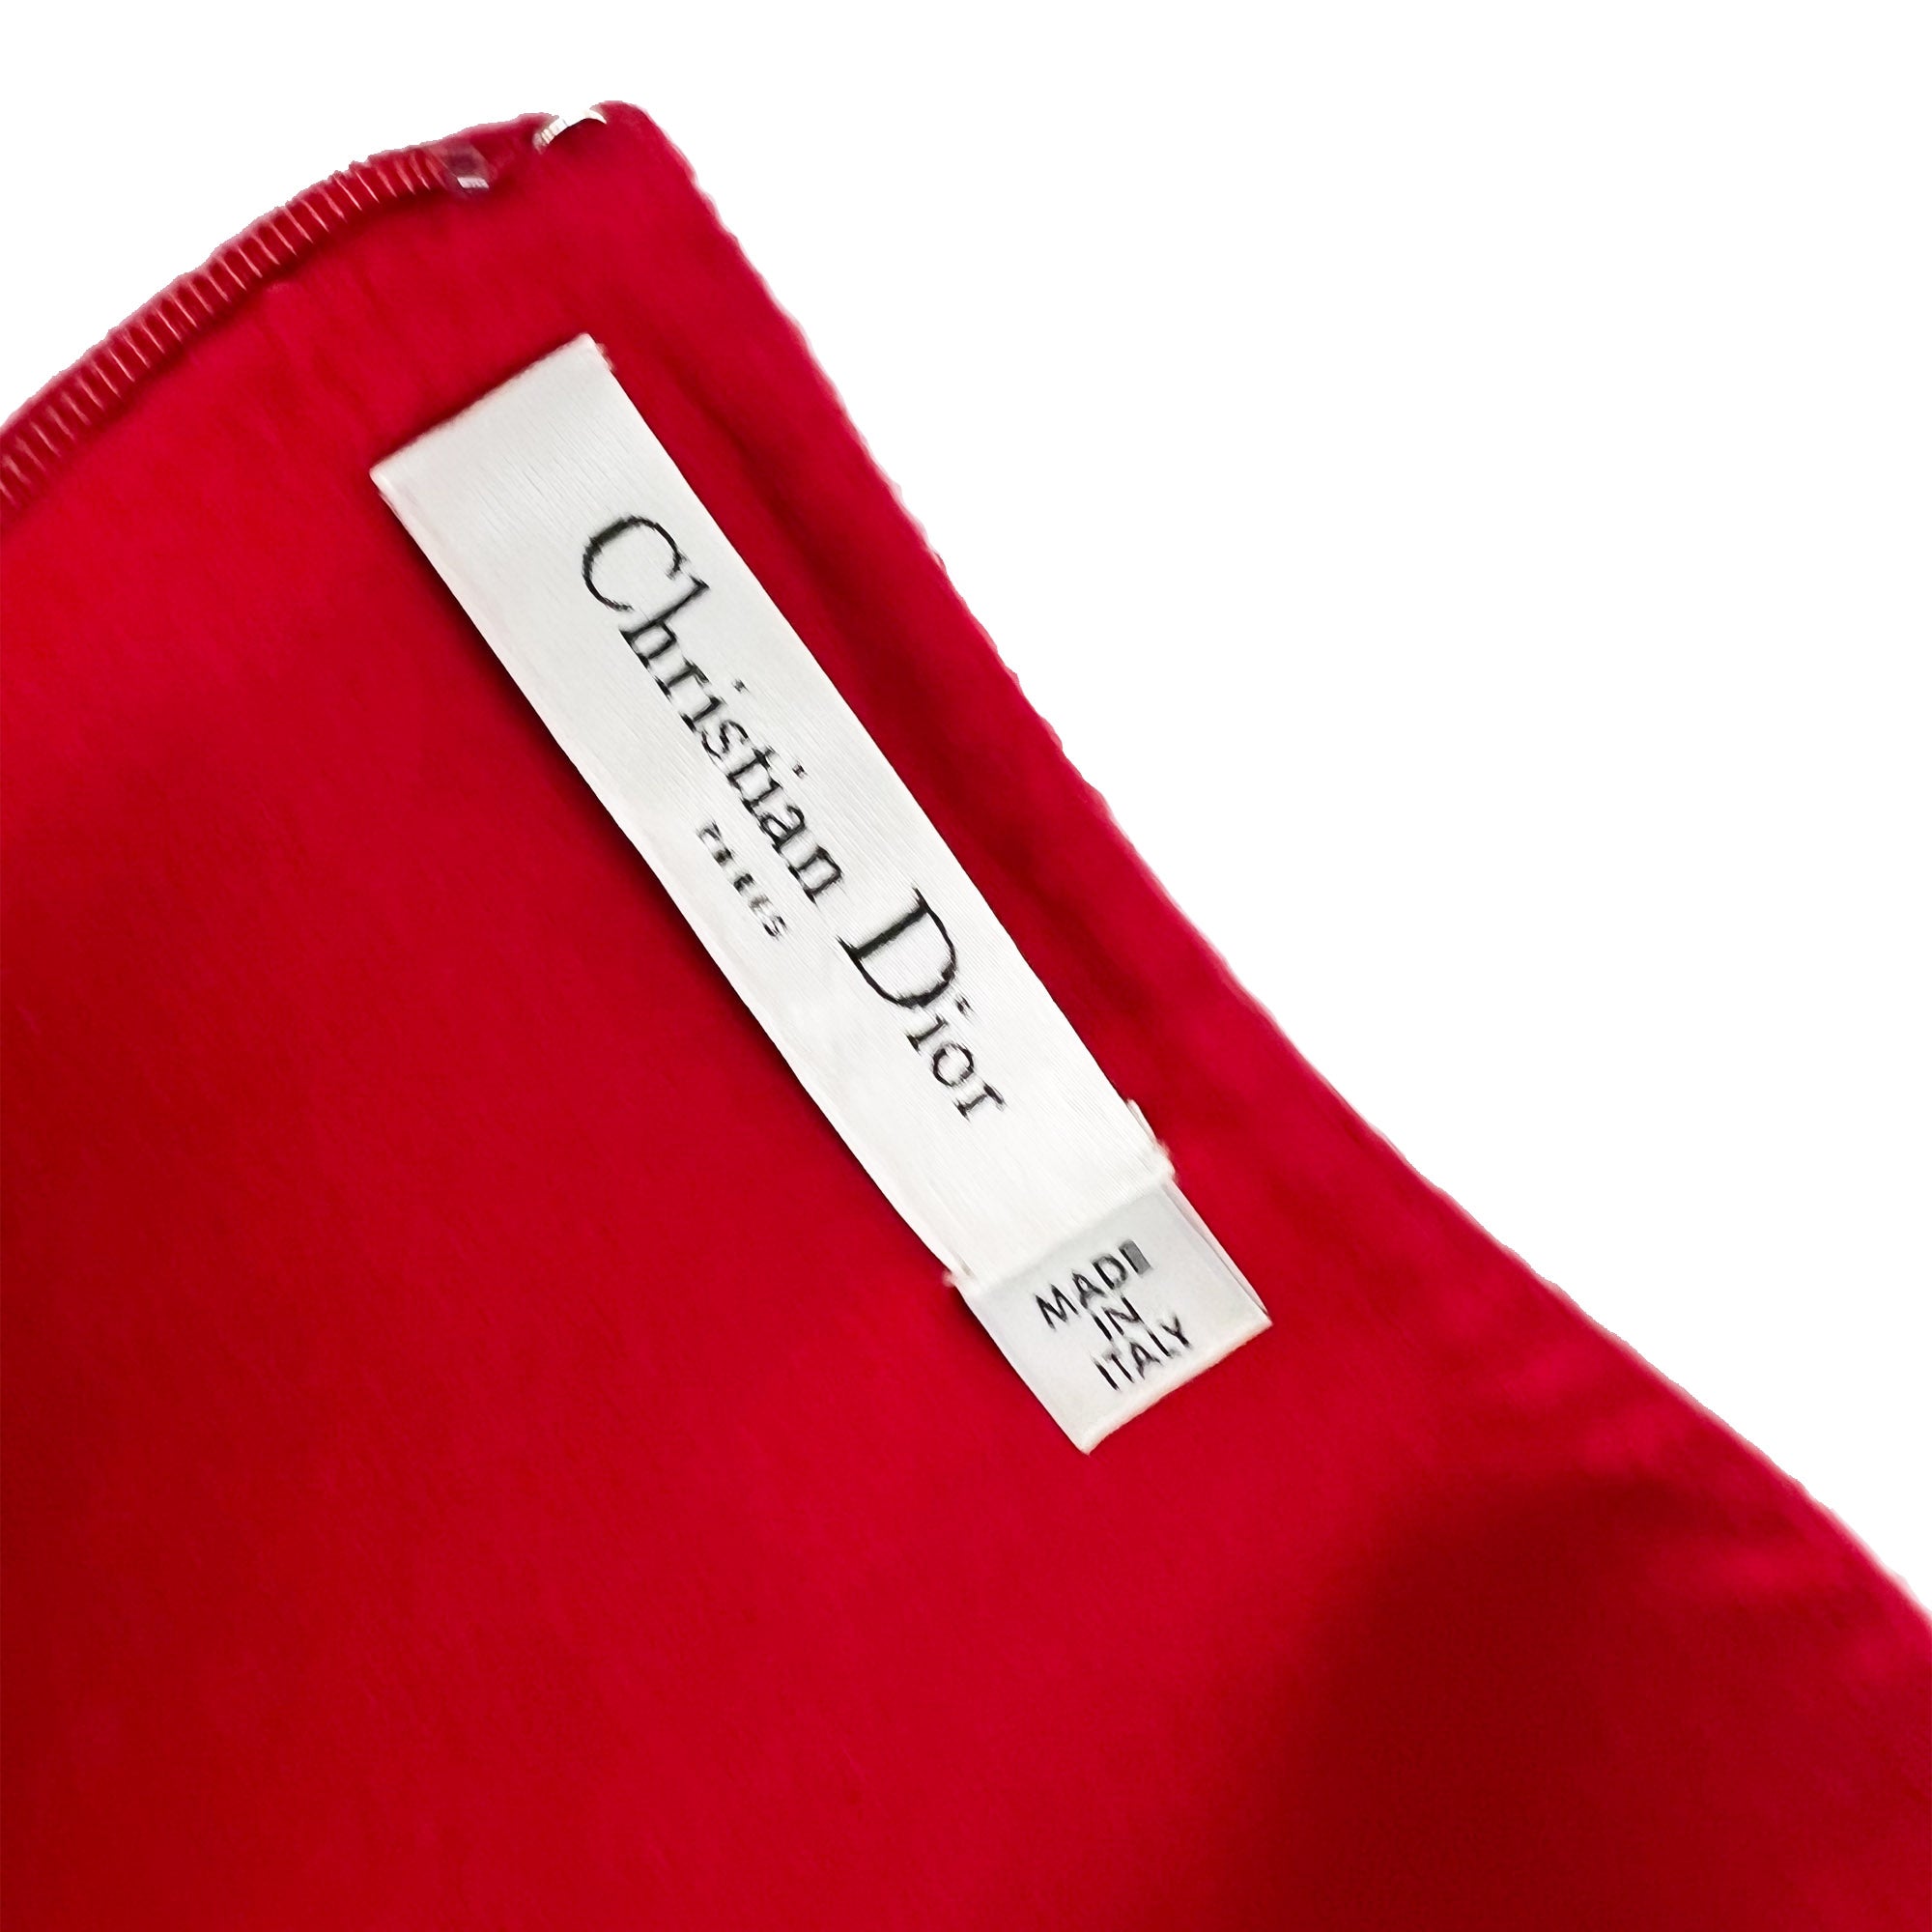 Christian Dior Vintage Red Dress